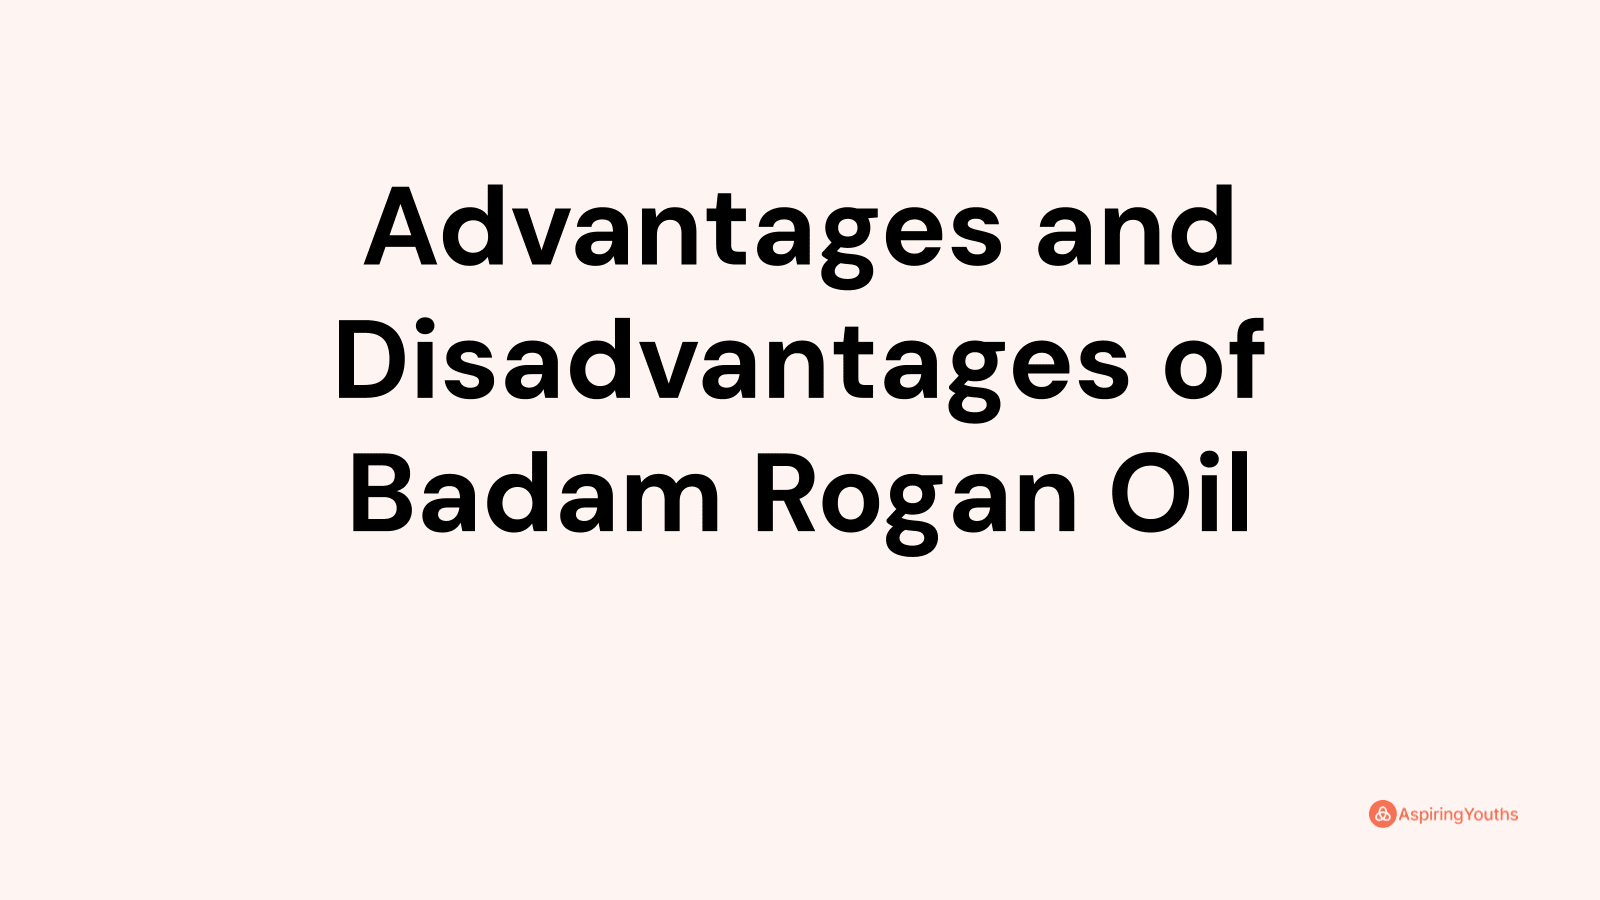 Advantages and disadvantages of Badam Rogan Oil